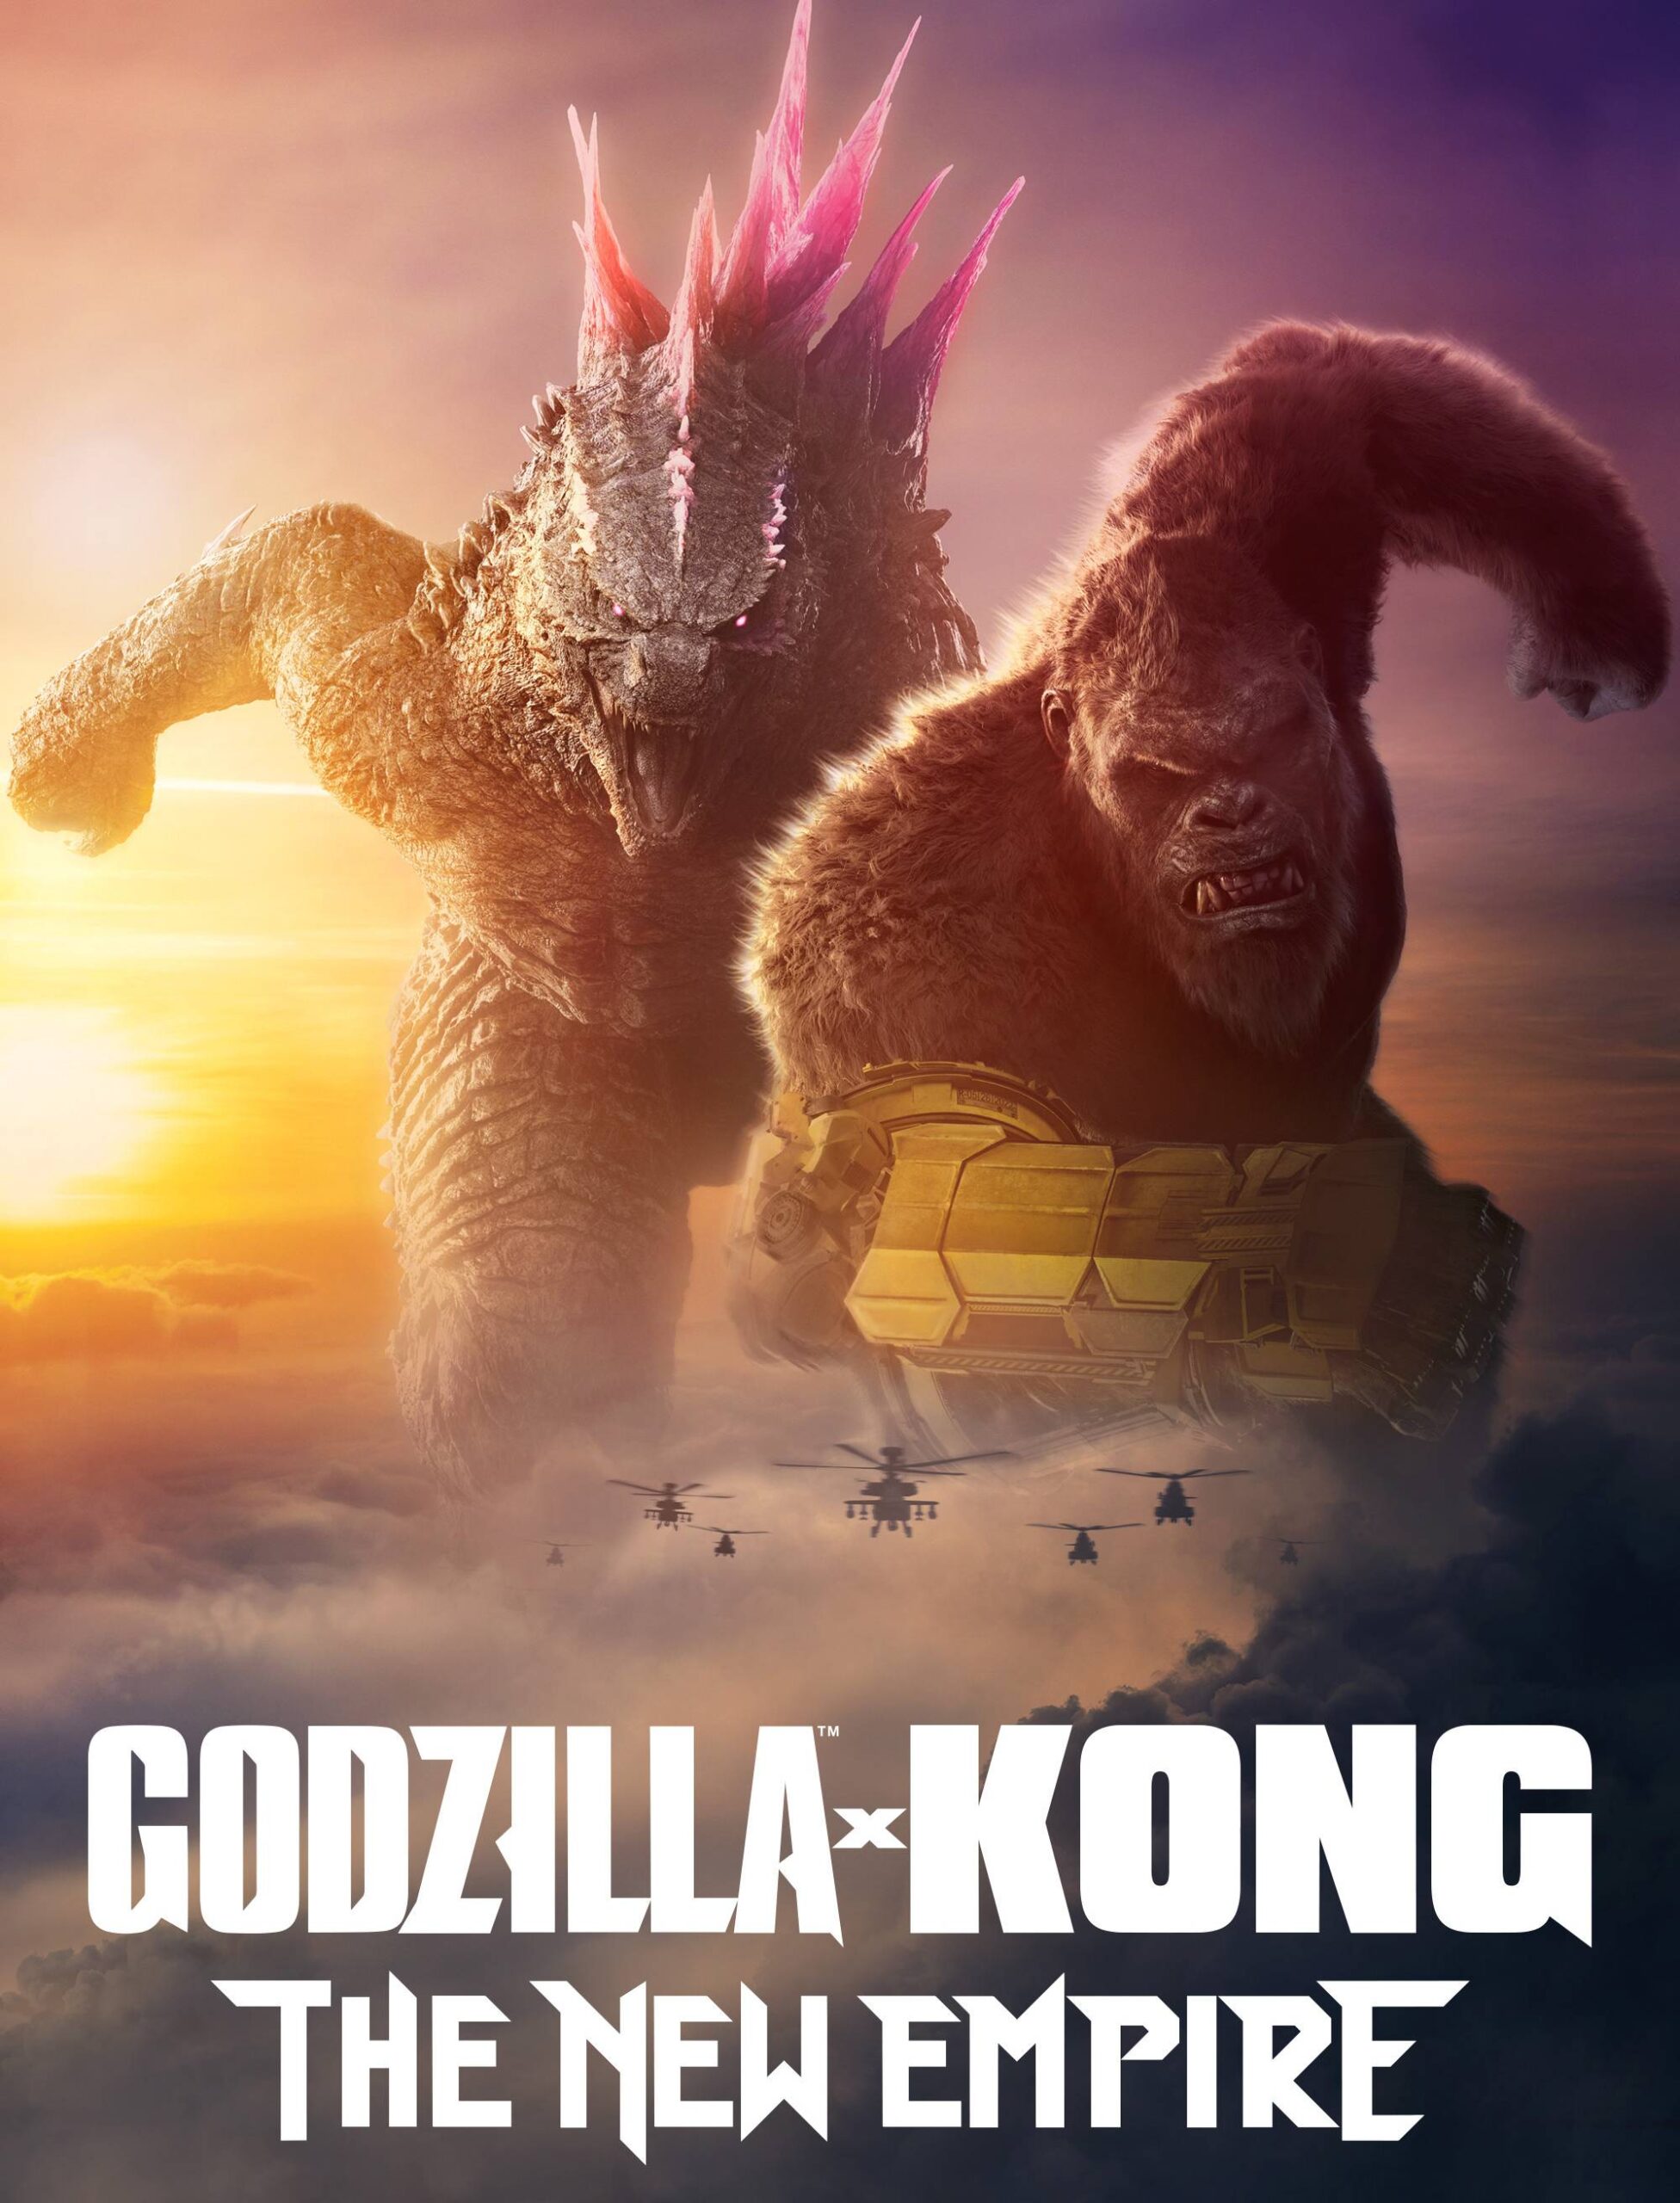 Godzilla X King: The New Empire